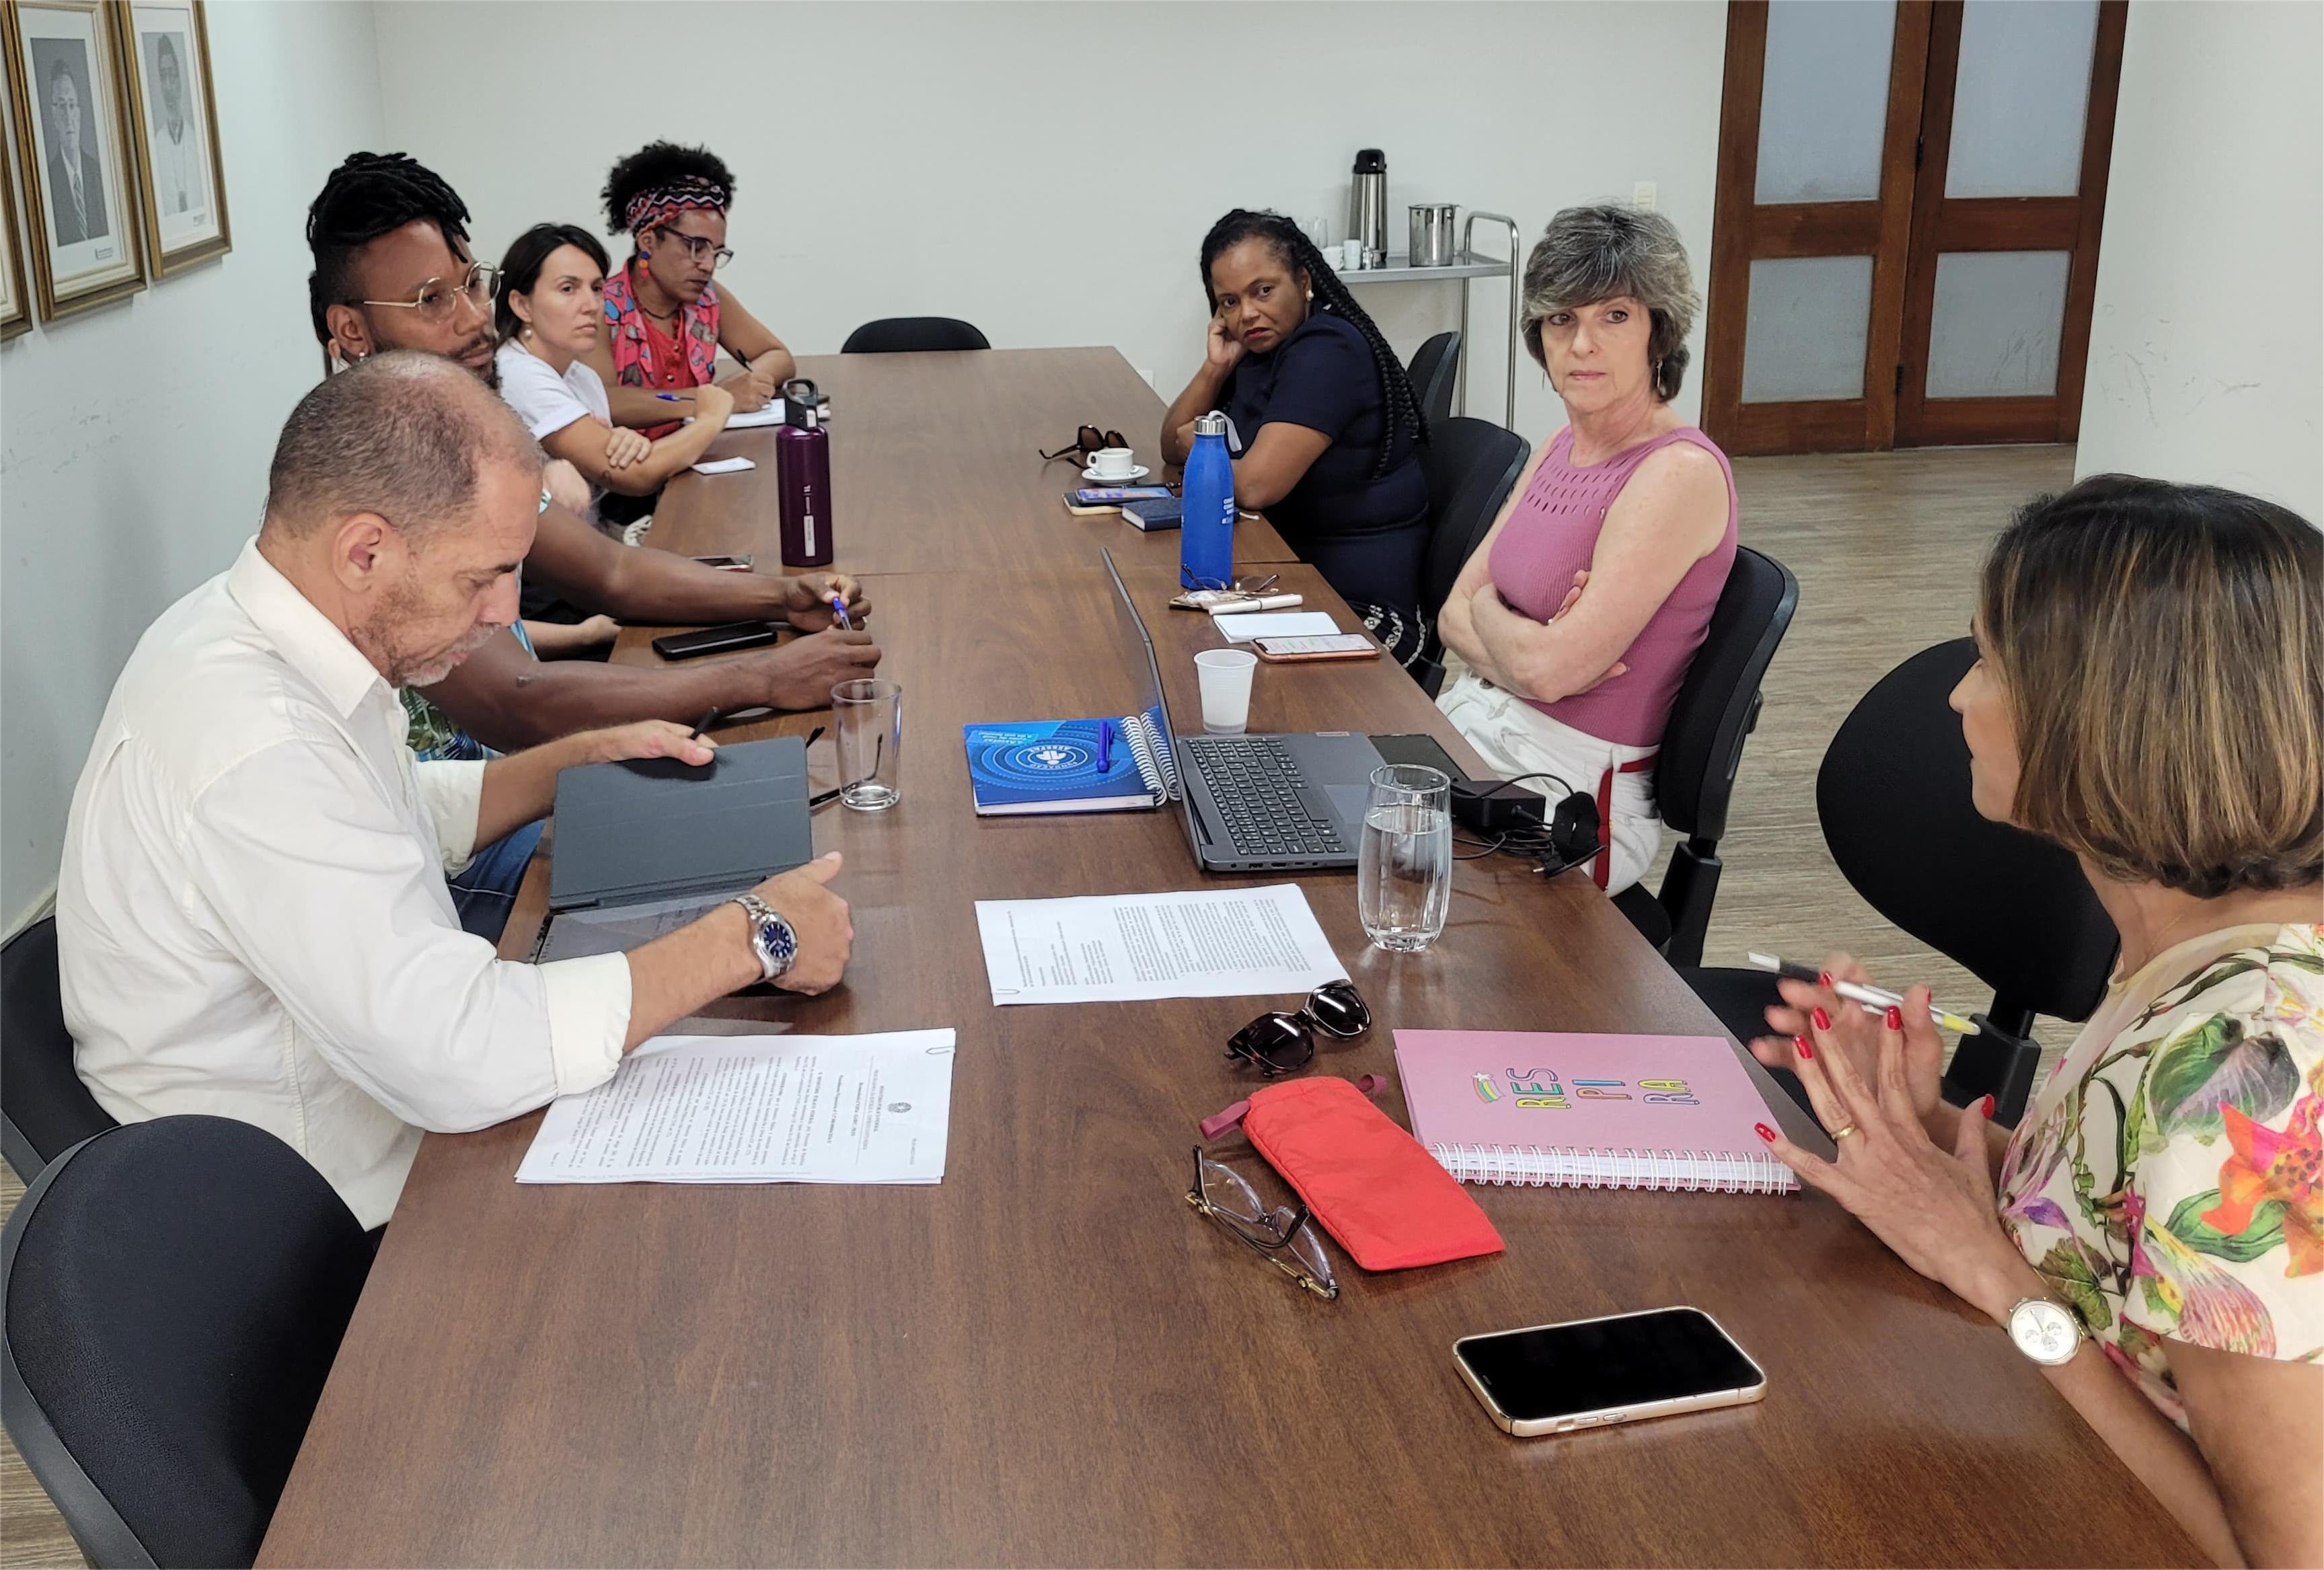 Foto da reunião, onde todos os participantes estão em uma sala de paredes brancas, sentados em torno de uma grande mesa de madeira 